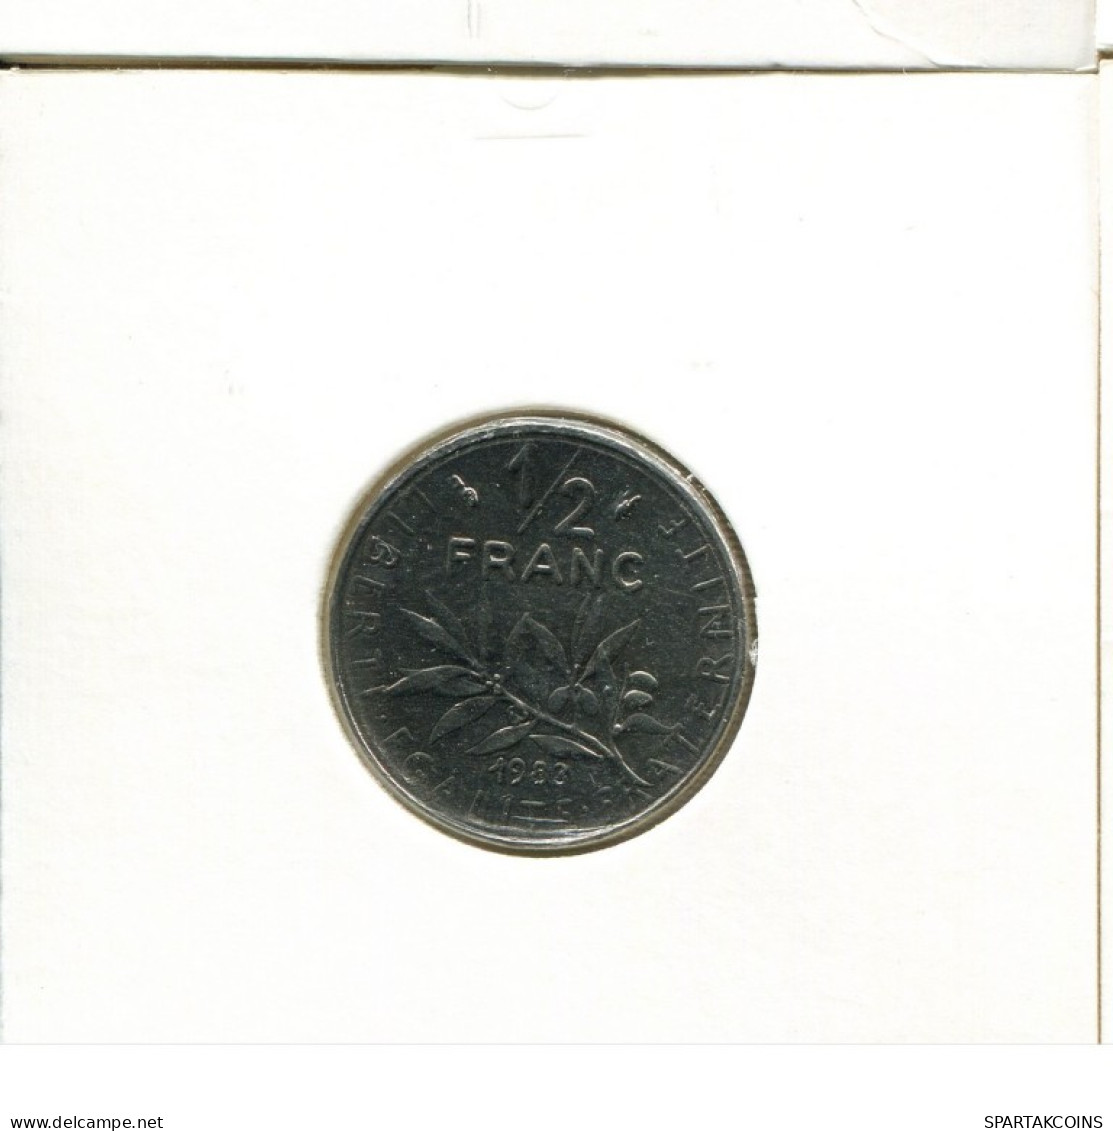 1/2 FRANC 1983 FRANCE Coin French Coin #AK489.U.A - 1/2 Franc